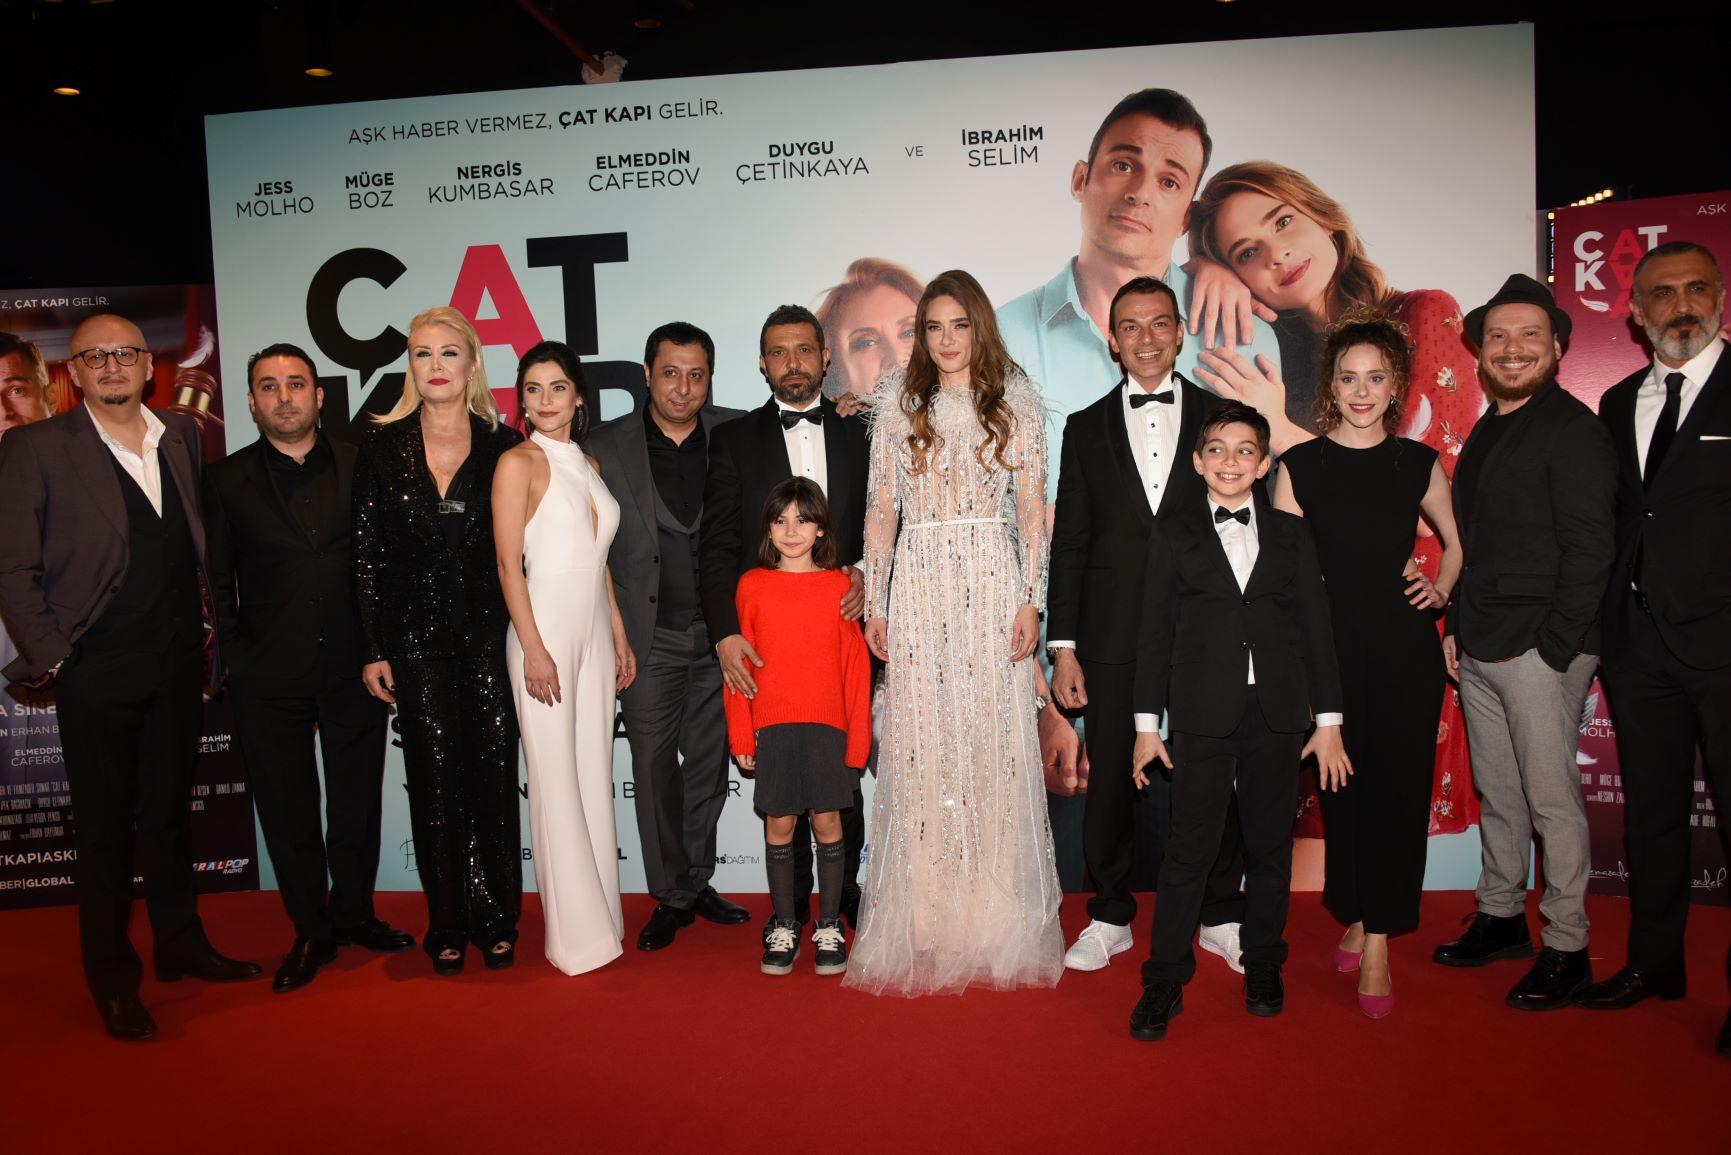 Гала-вечер азербайджанского фильма "Потрескавшаяся любовь" в Стамбуле с участием турецких звезд (ВИДЕО, ФОТО)